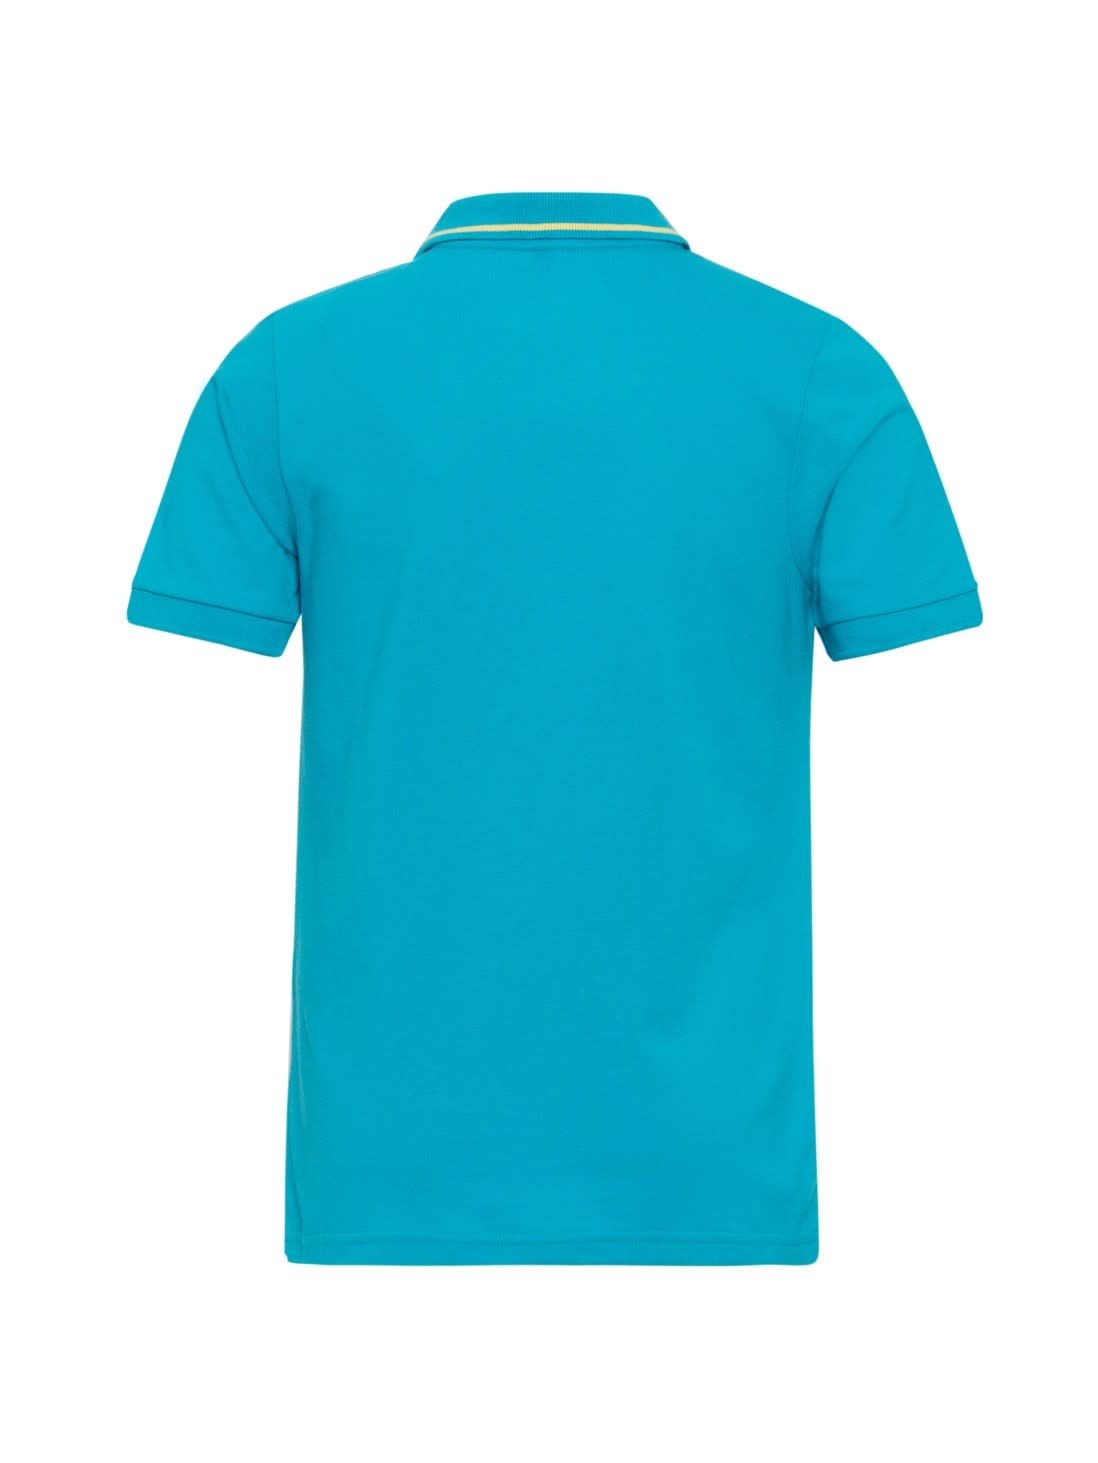 Jockey Juniors Boys Apparel Tops | Scuba Blue Boys T-Shirt